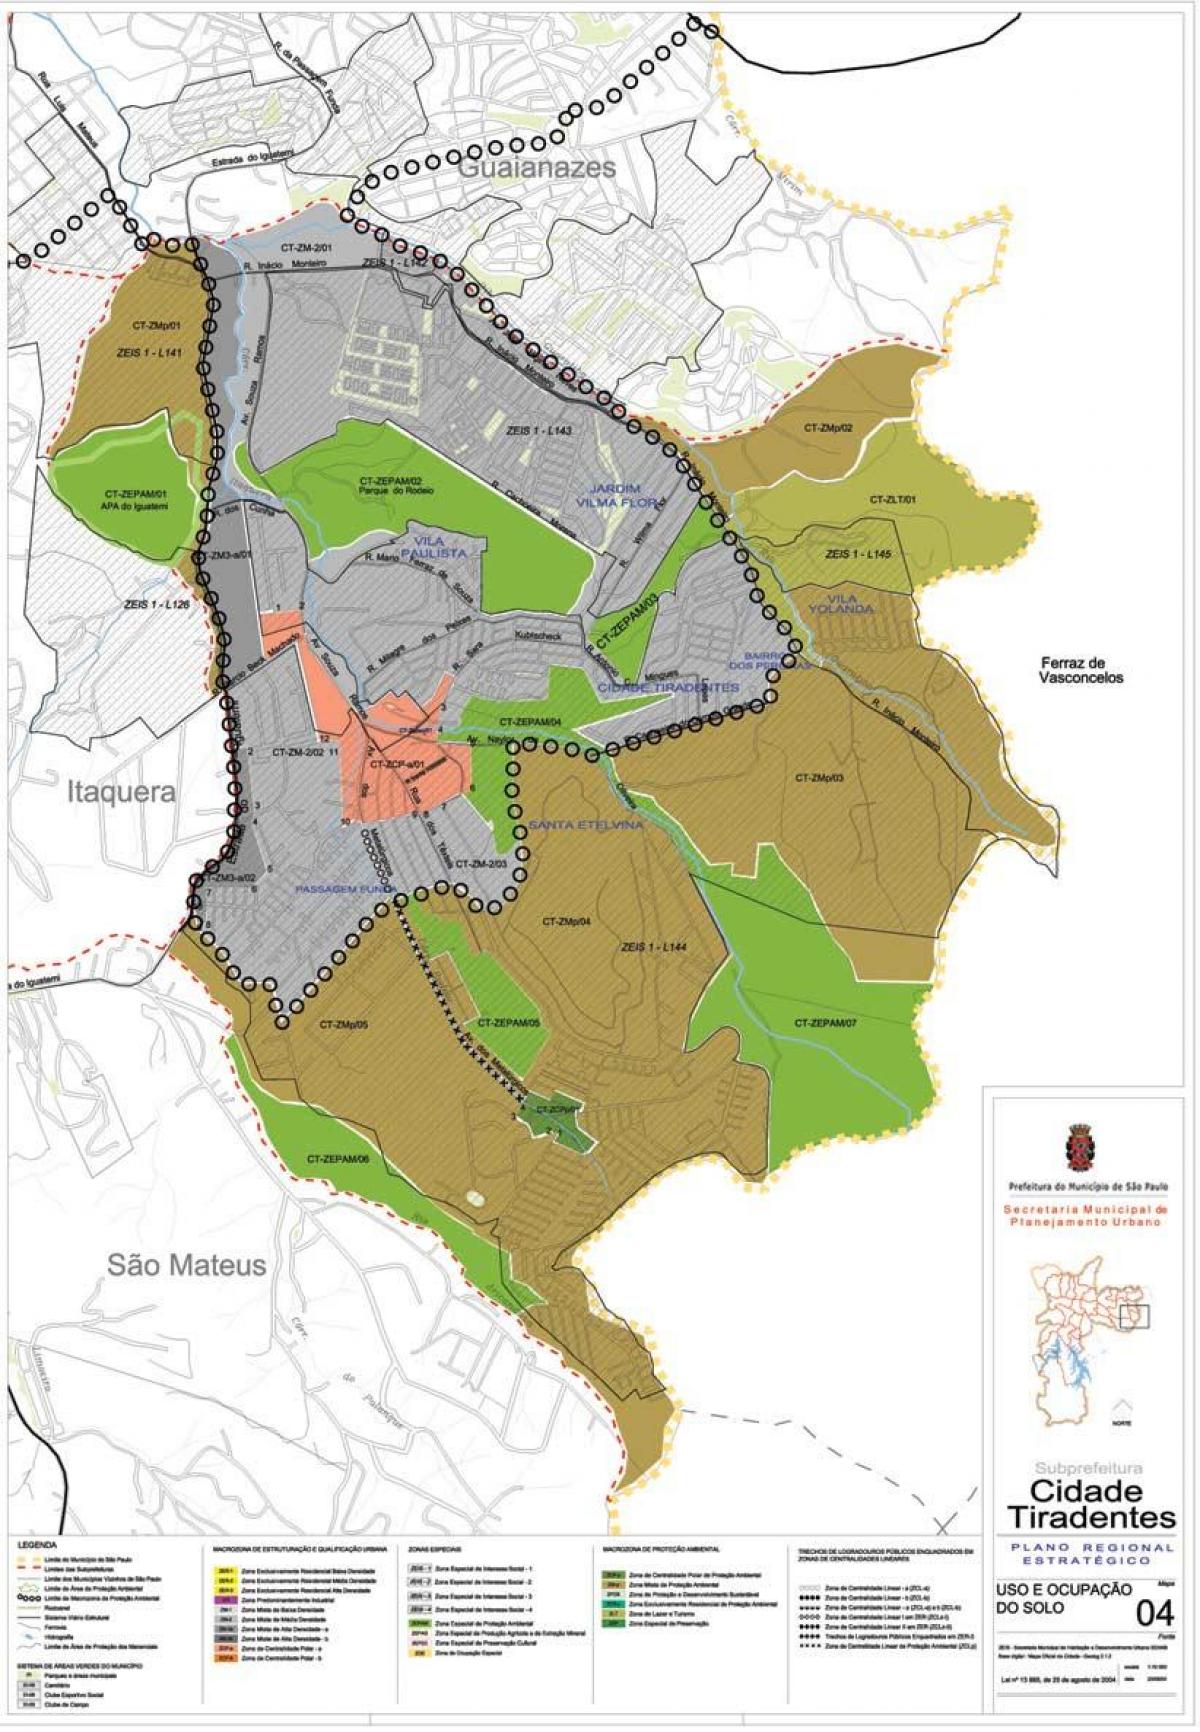 Mapa de Cidade Tiradentes São Paulo - la Ocupación de la tierra